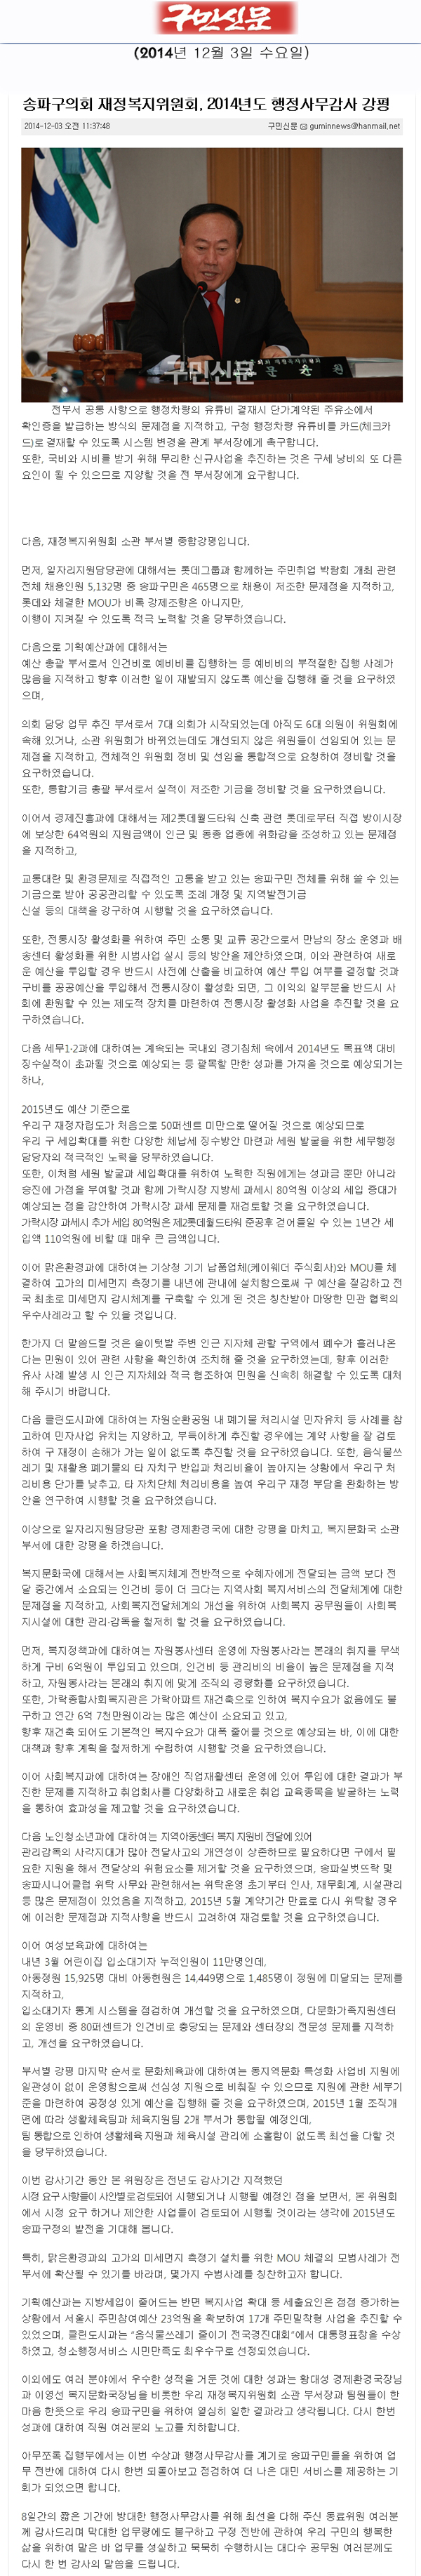 송파구의회 재정복지위원회, 2014년도 행정사무감사 강평 [구민신문] - 1